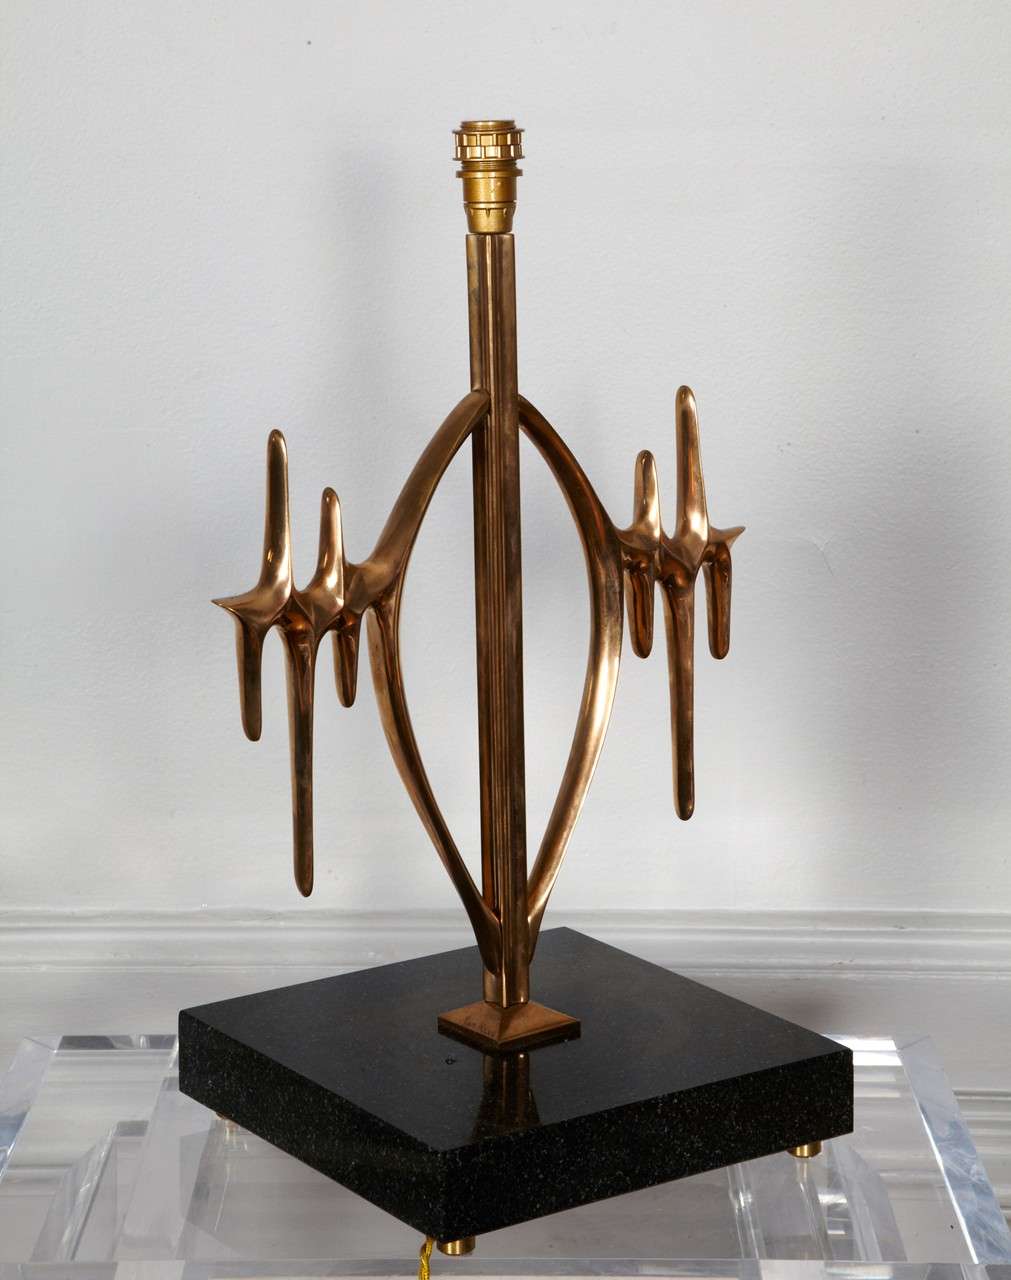 Tolles Paar ungewöhnlicher Lampen, entworfen von Van Heeck.
CIRCA 1970er Jahre
Marmor und Bronze
Unterzeichnet
neu verkabelt